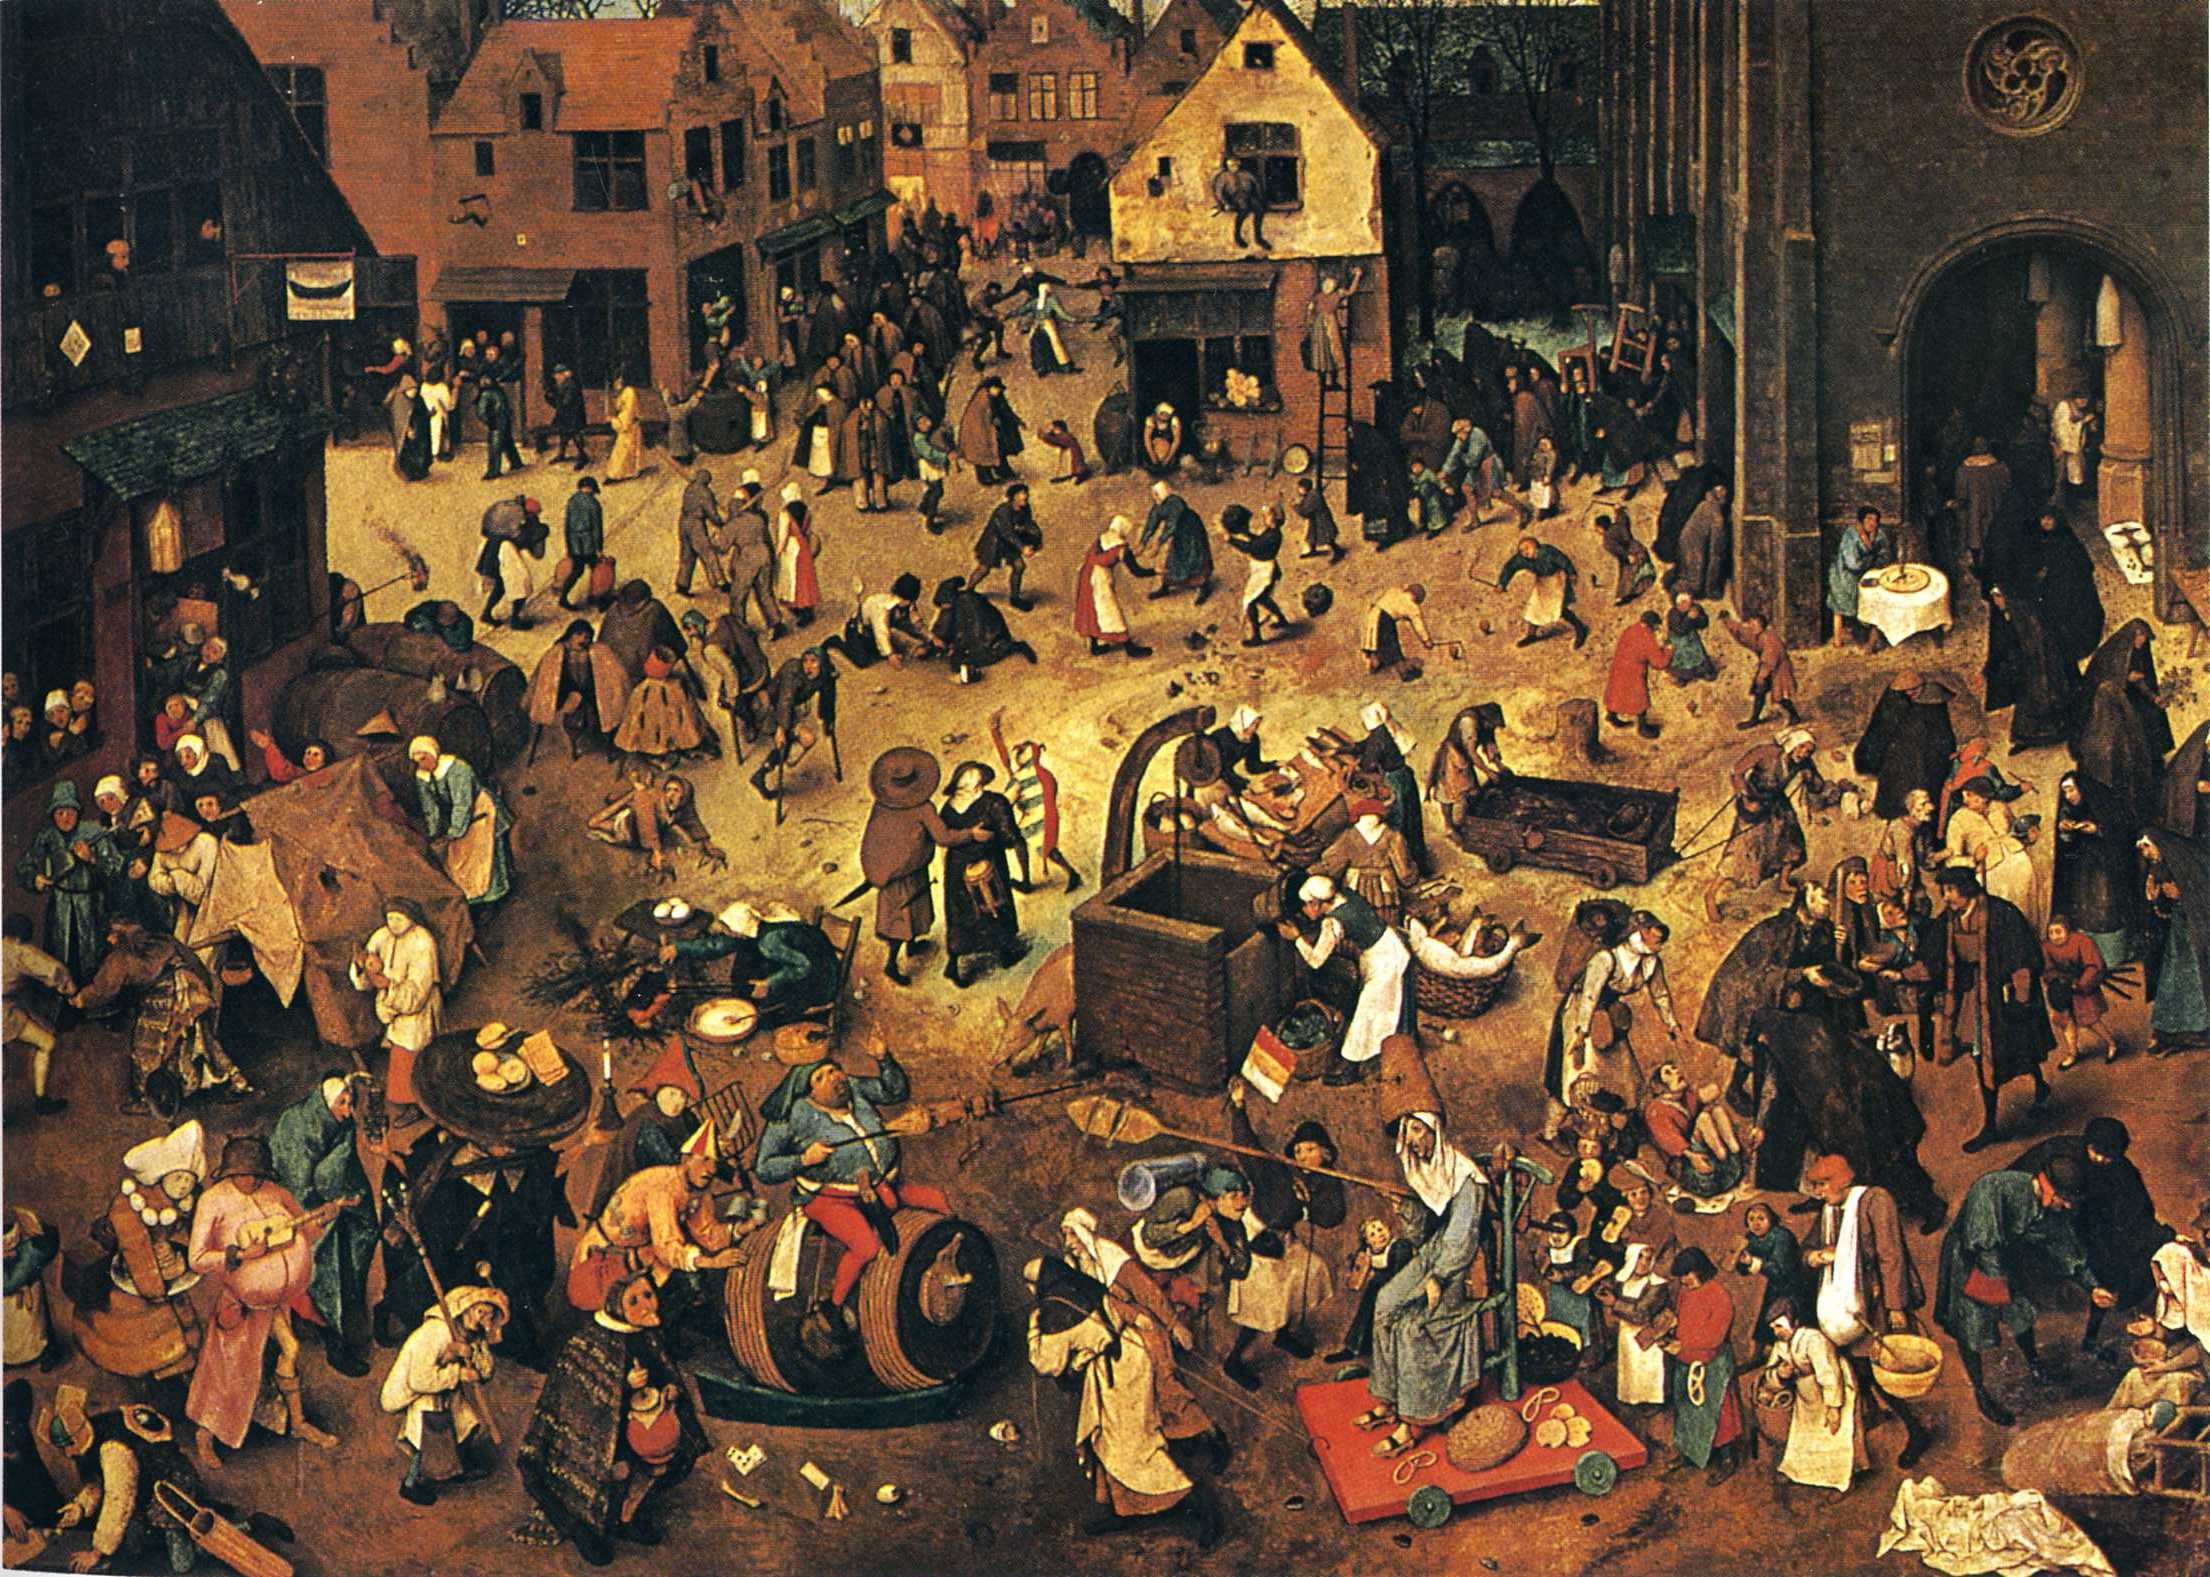 Le Combat de Carnaval et Carême by Pieter Bruegel l'Ancien - 1559 Kunsthistorisches Museum